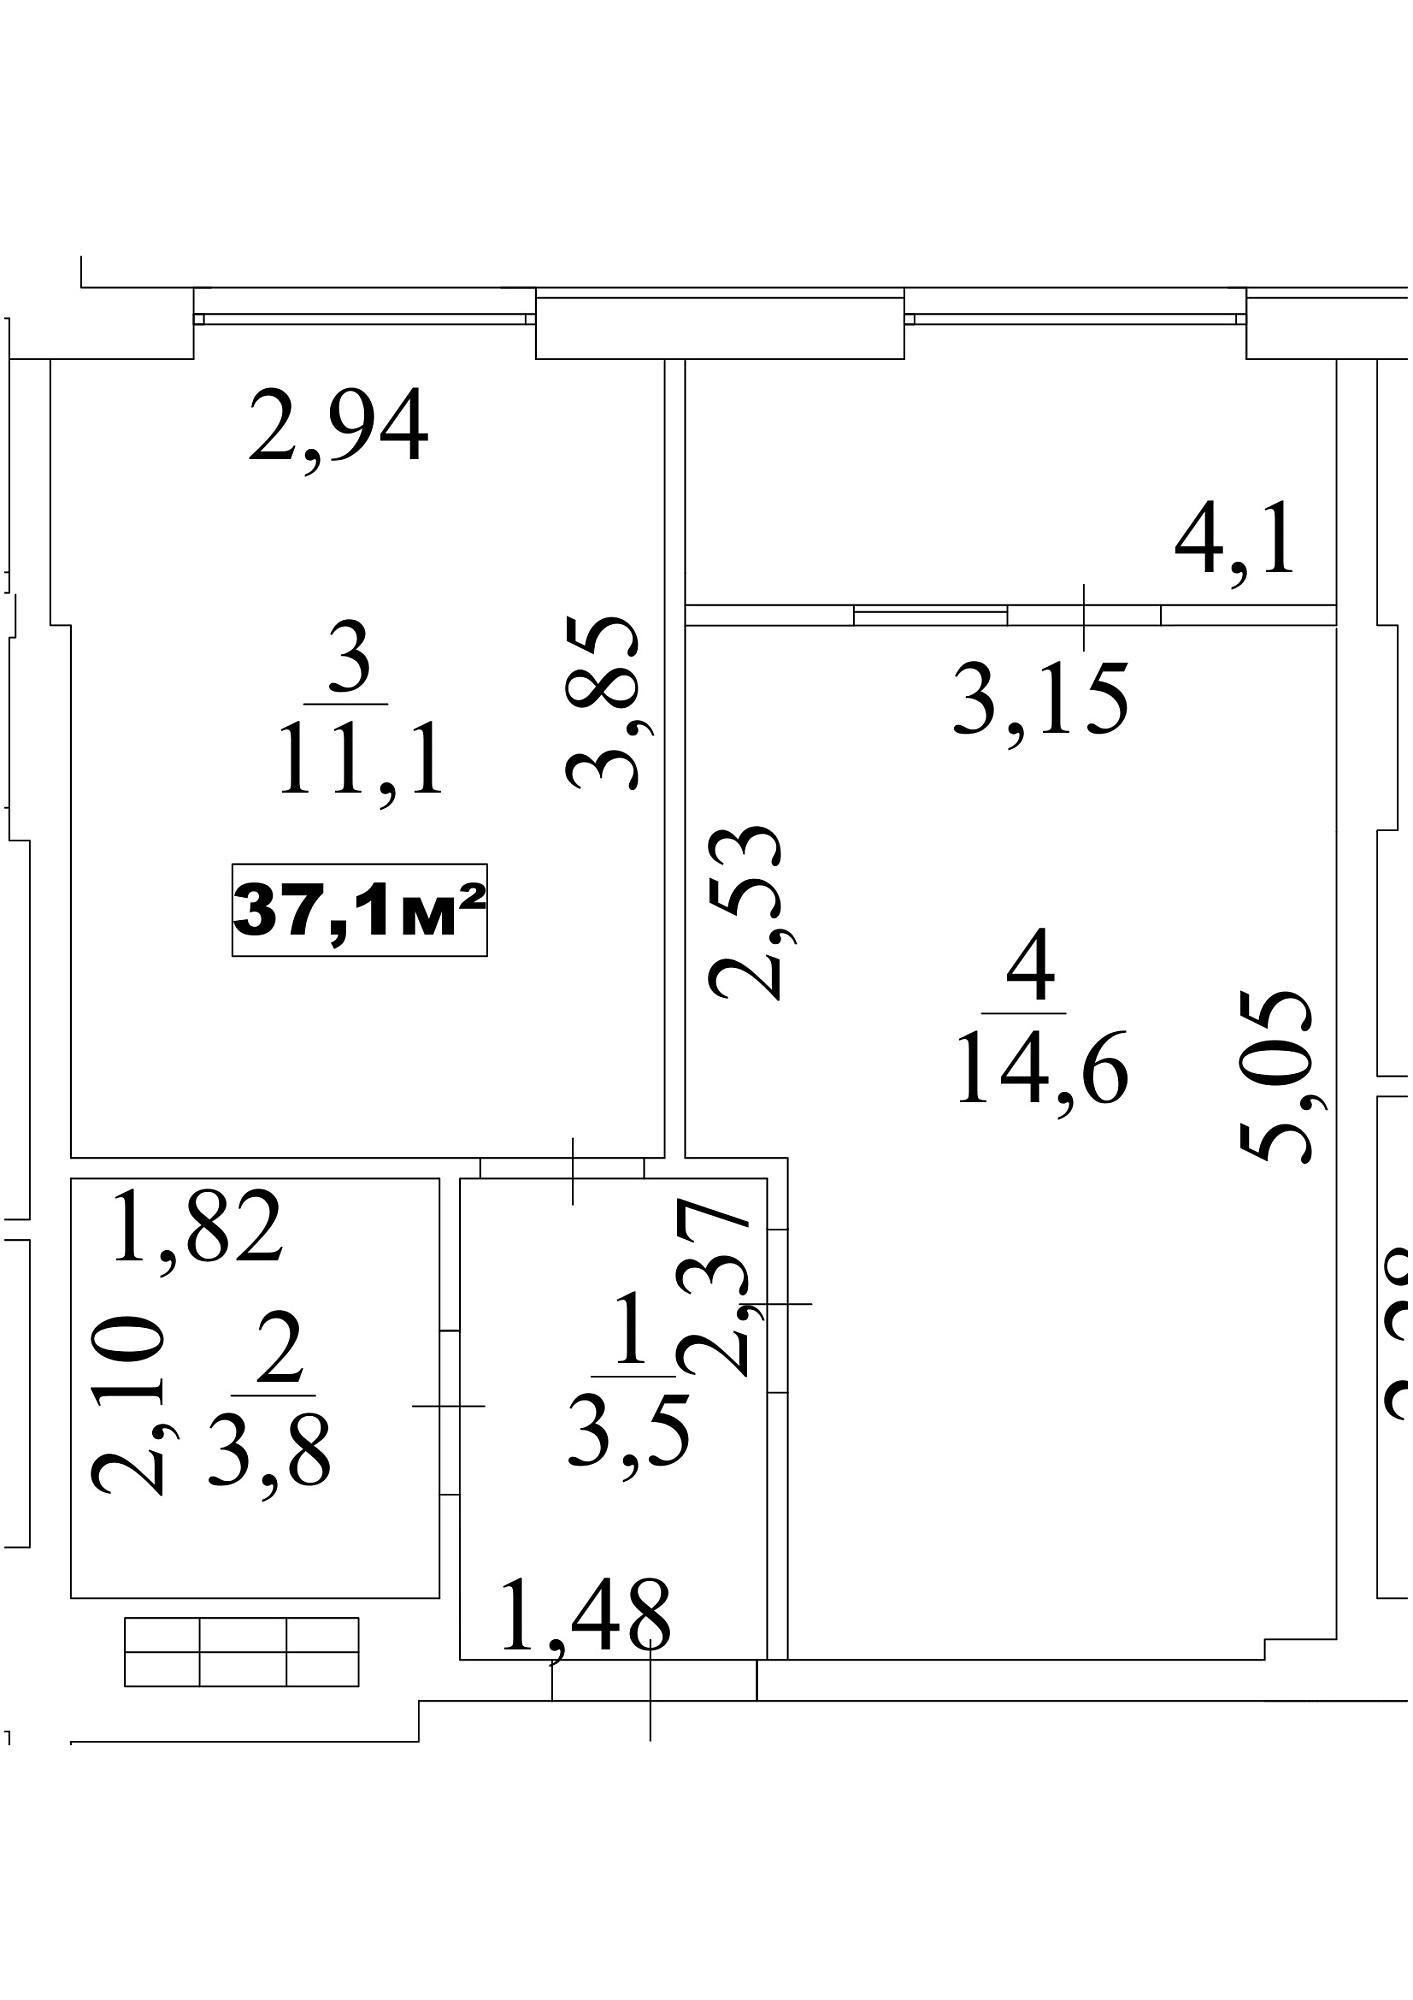 Планування 1-к квартира площею 37.1м2, AB-10-09/00078.